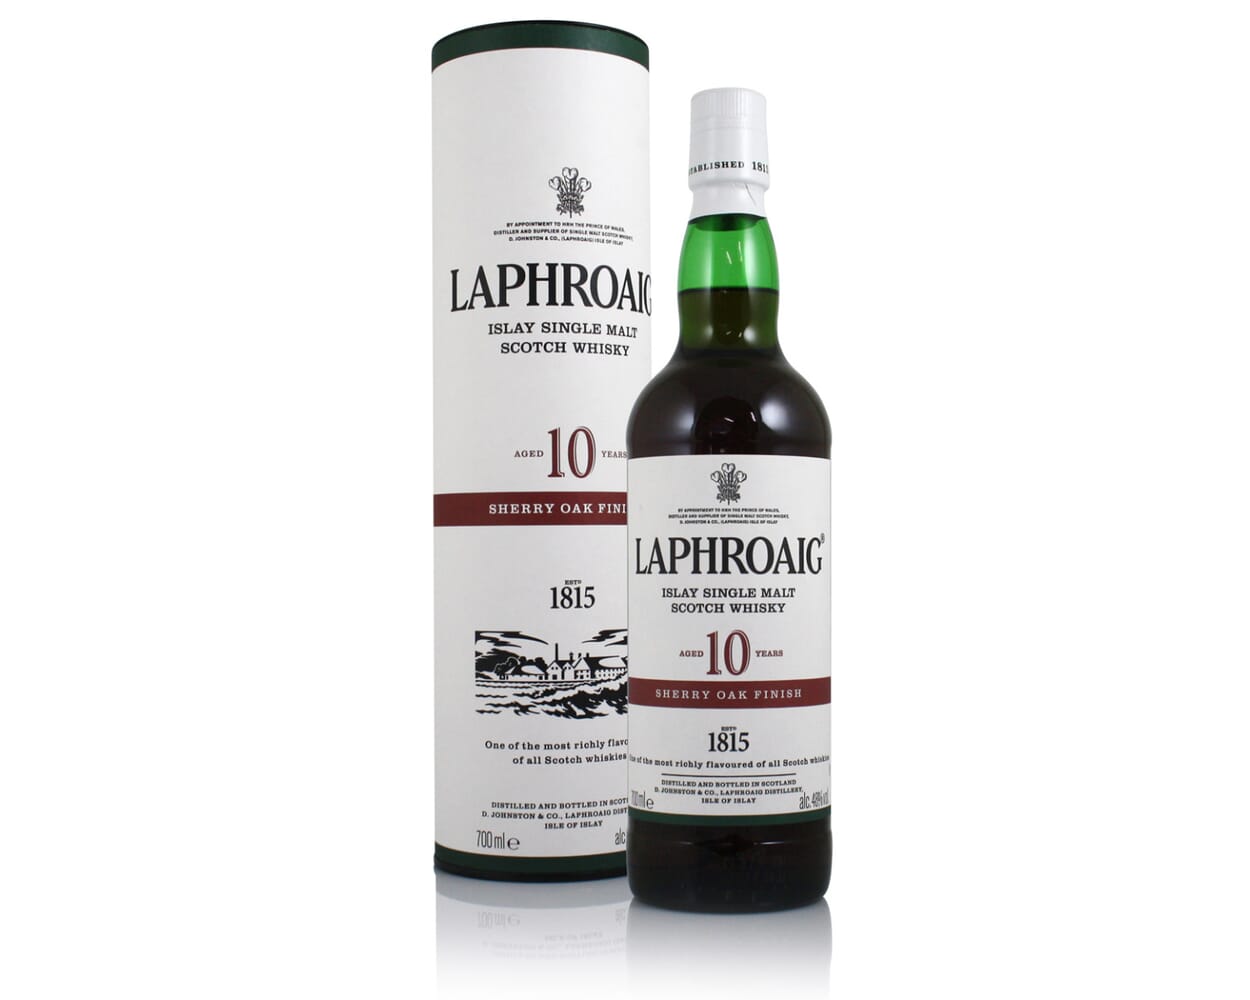 Laphroaig 10 Year Old Sherry Oak Finish Scotch Whisky : The Whisky